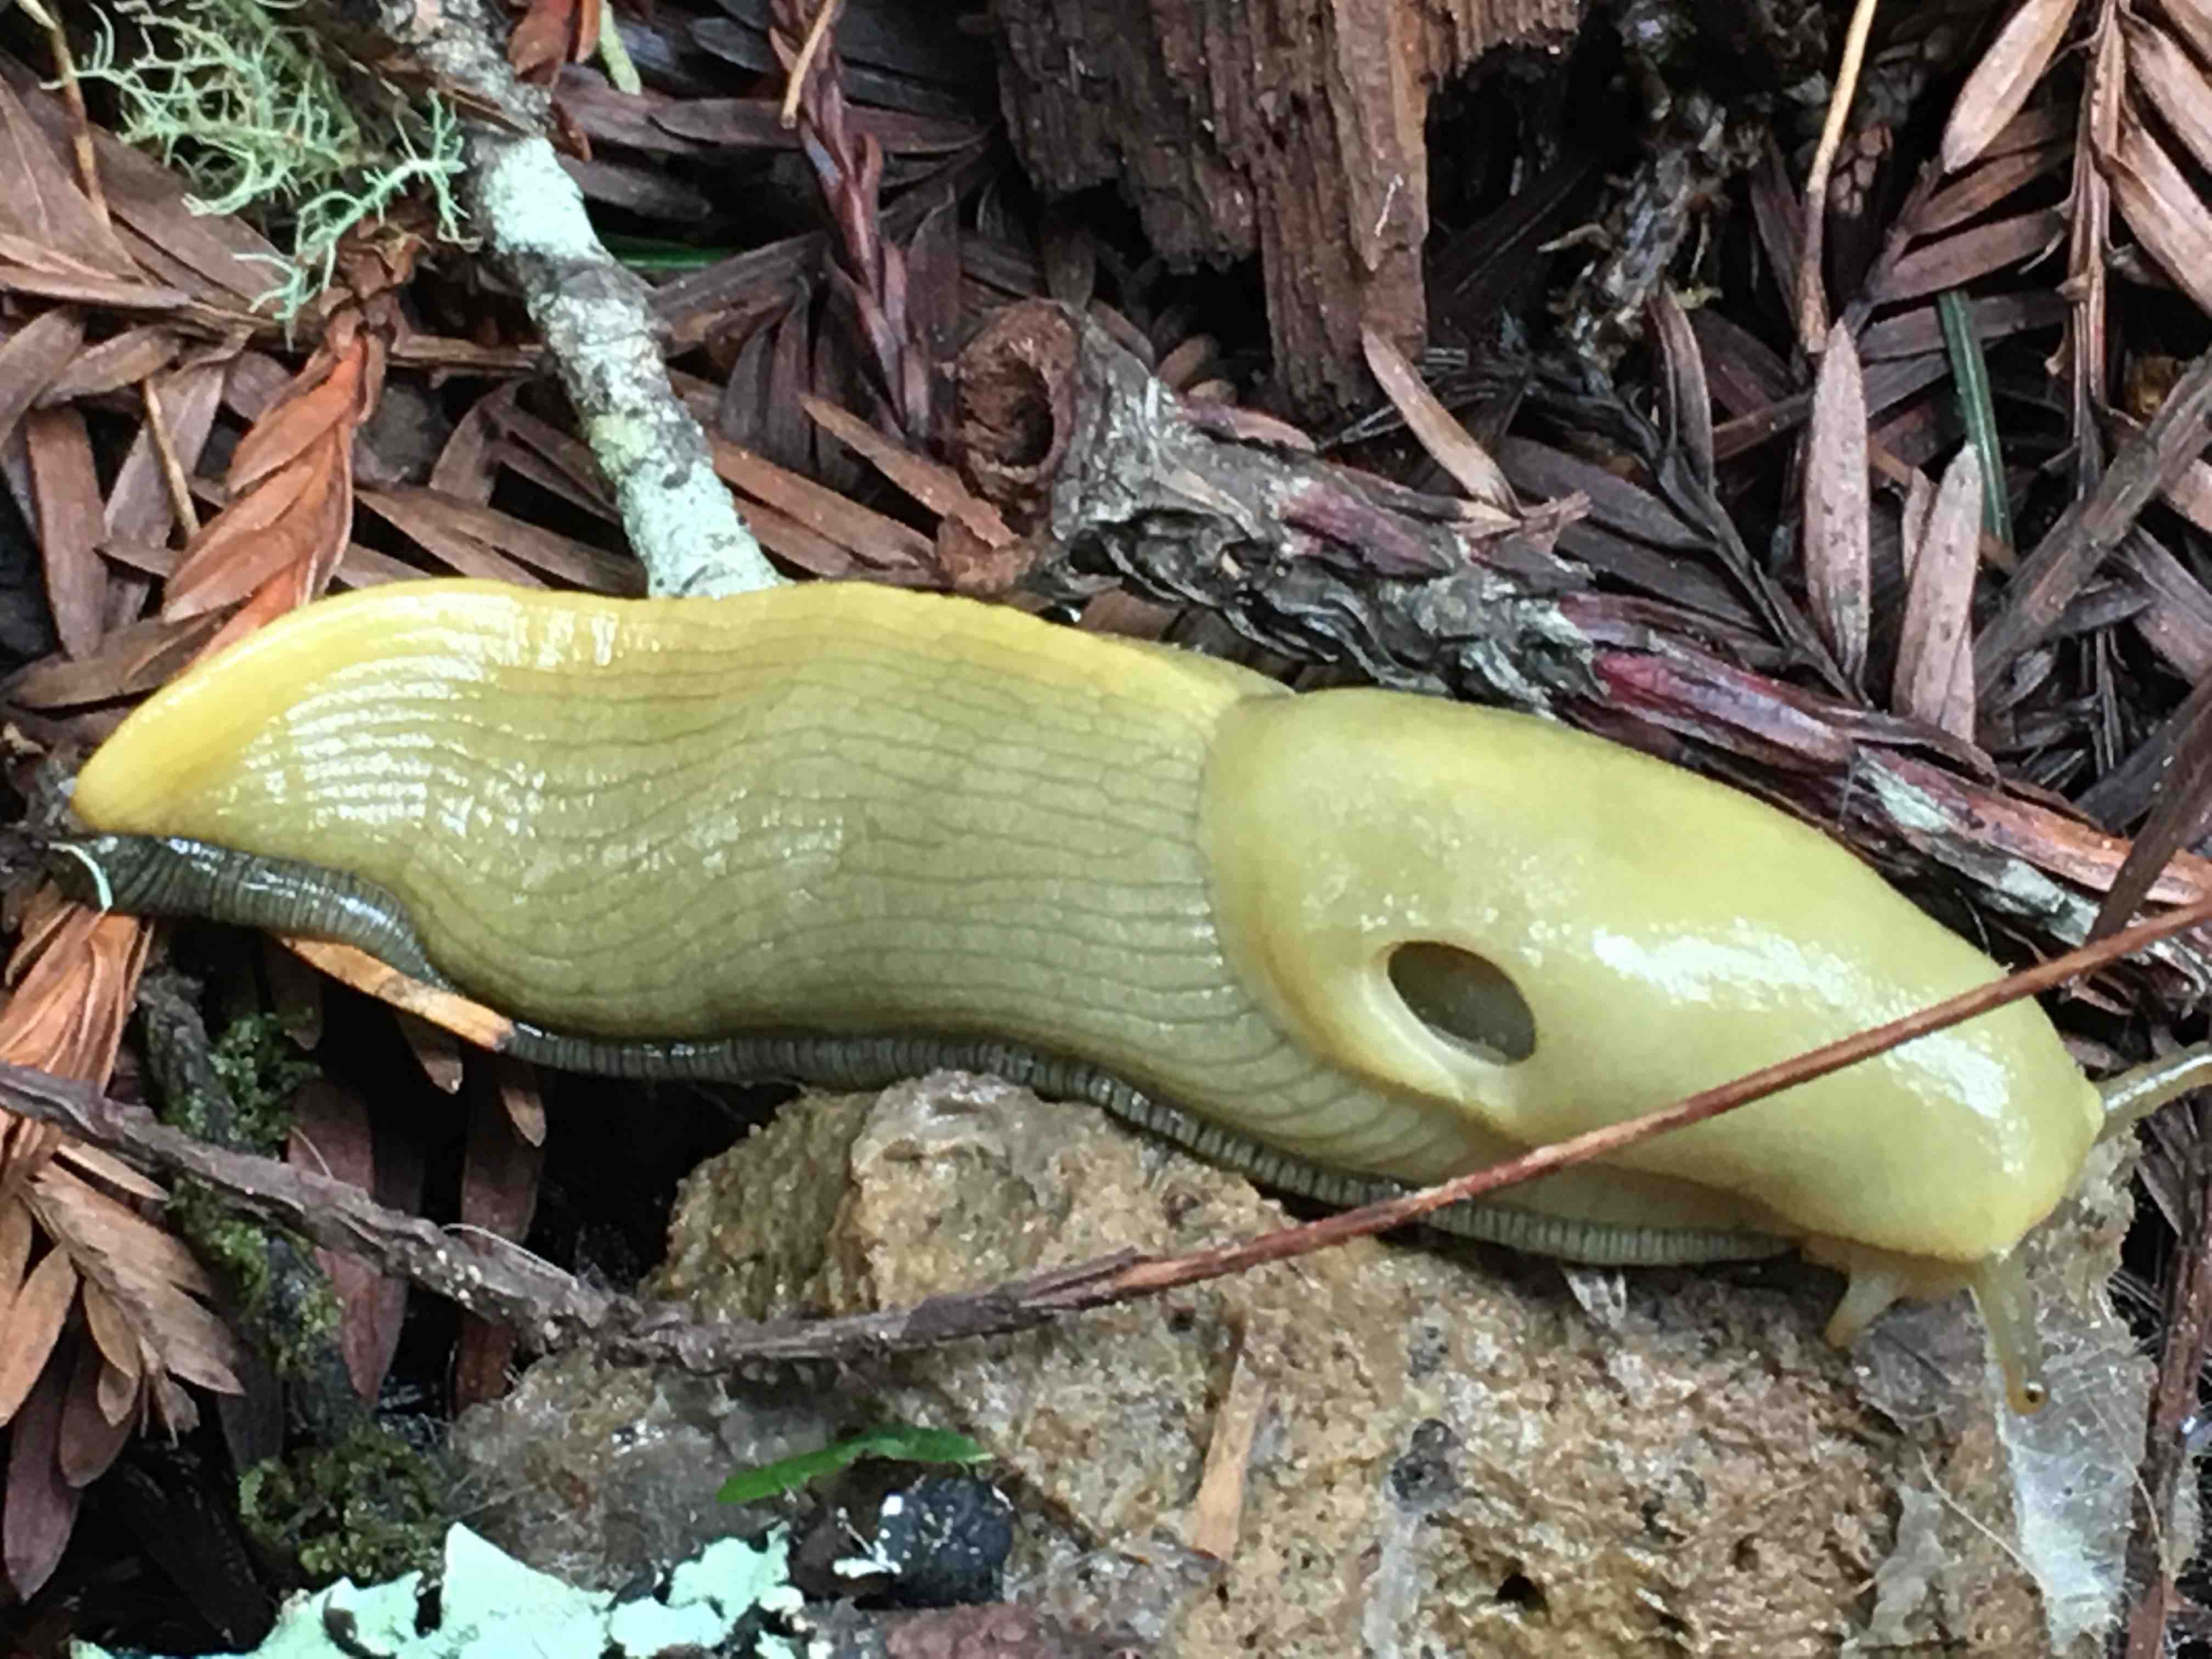 banana slugs protect redwoods